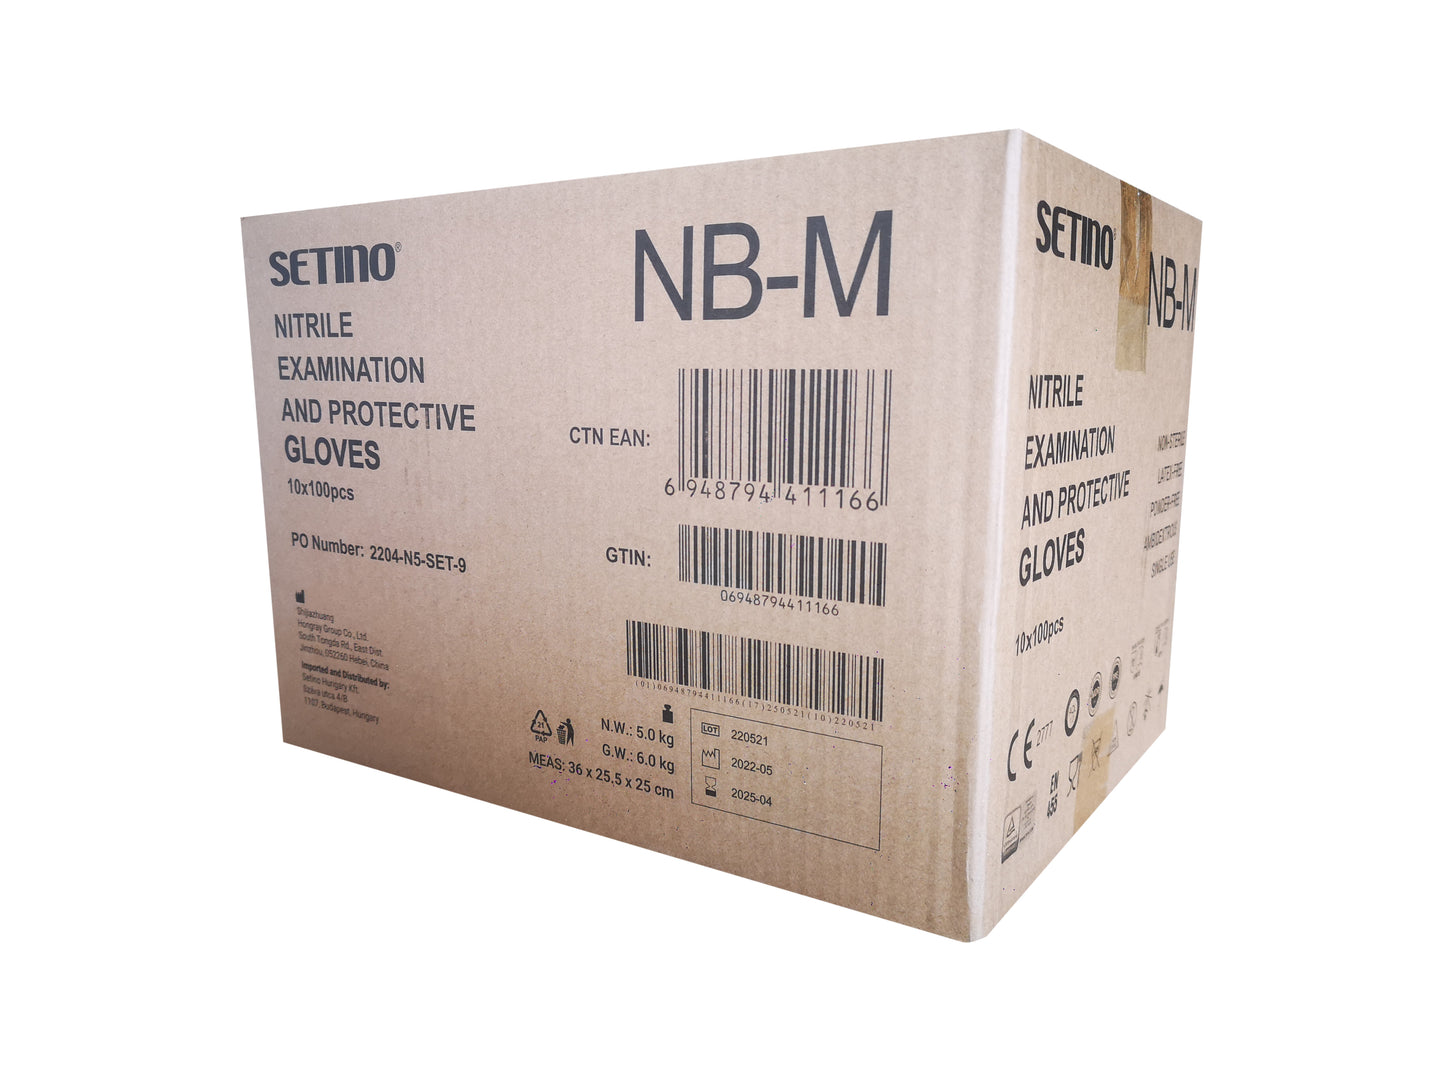 NPF4001-4005 nitril onderzoeks- en beschermingshandschoen poedervrij zwart 5 gram